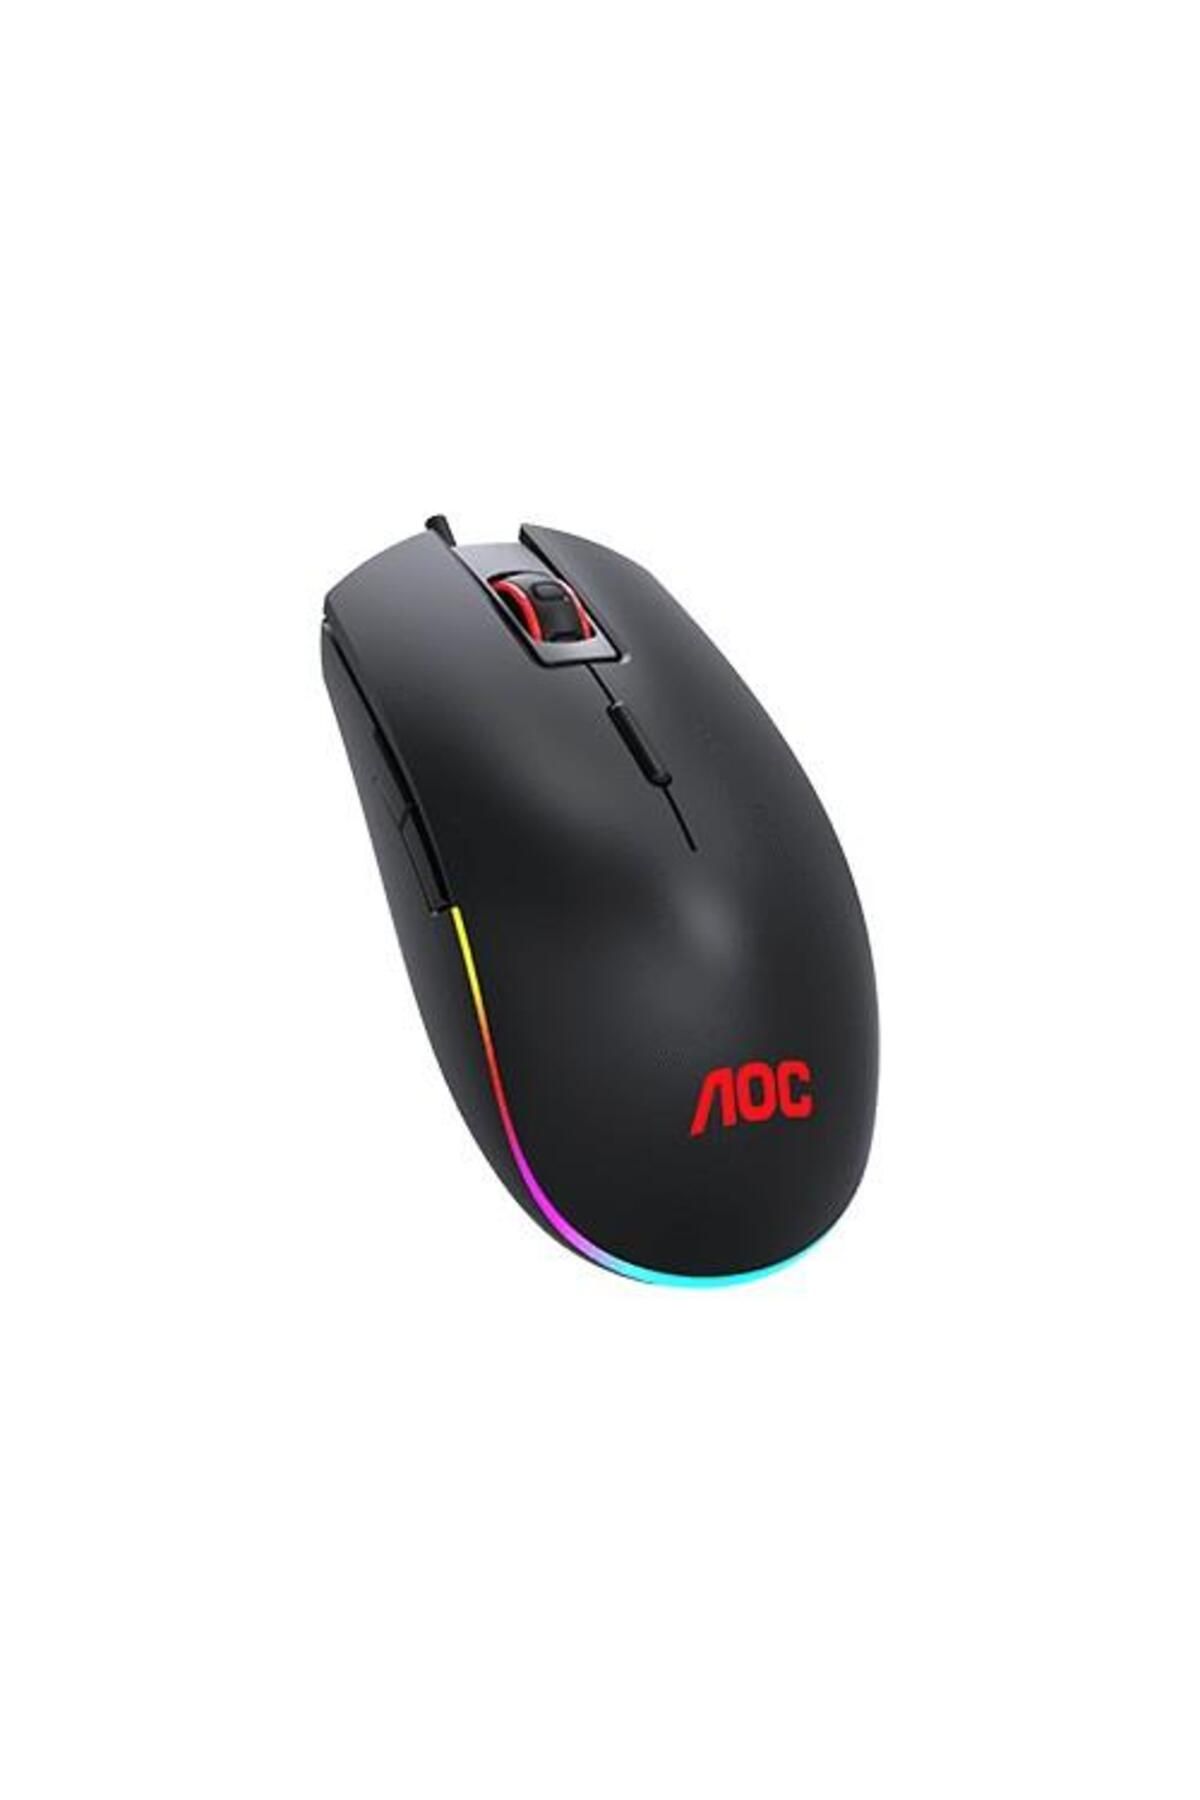 AOC Gm500 Rgb Optik Gaming Mouse